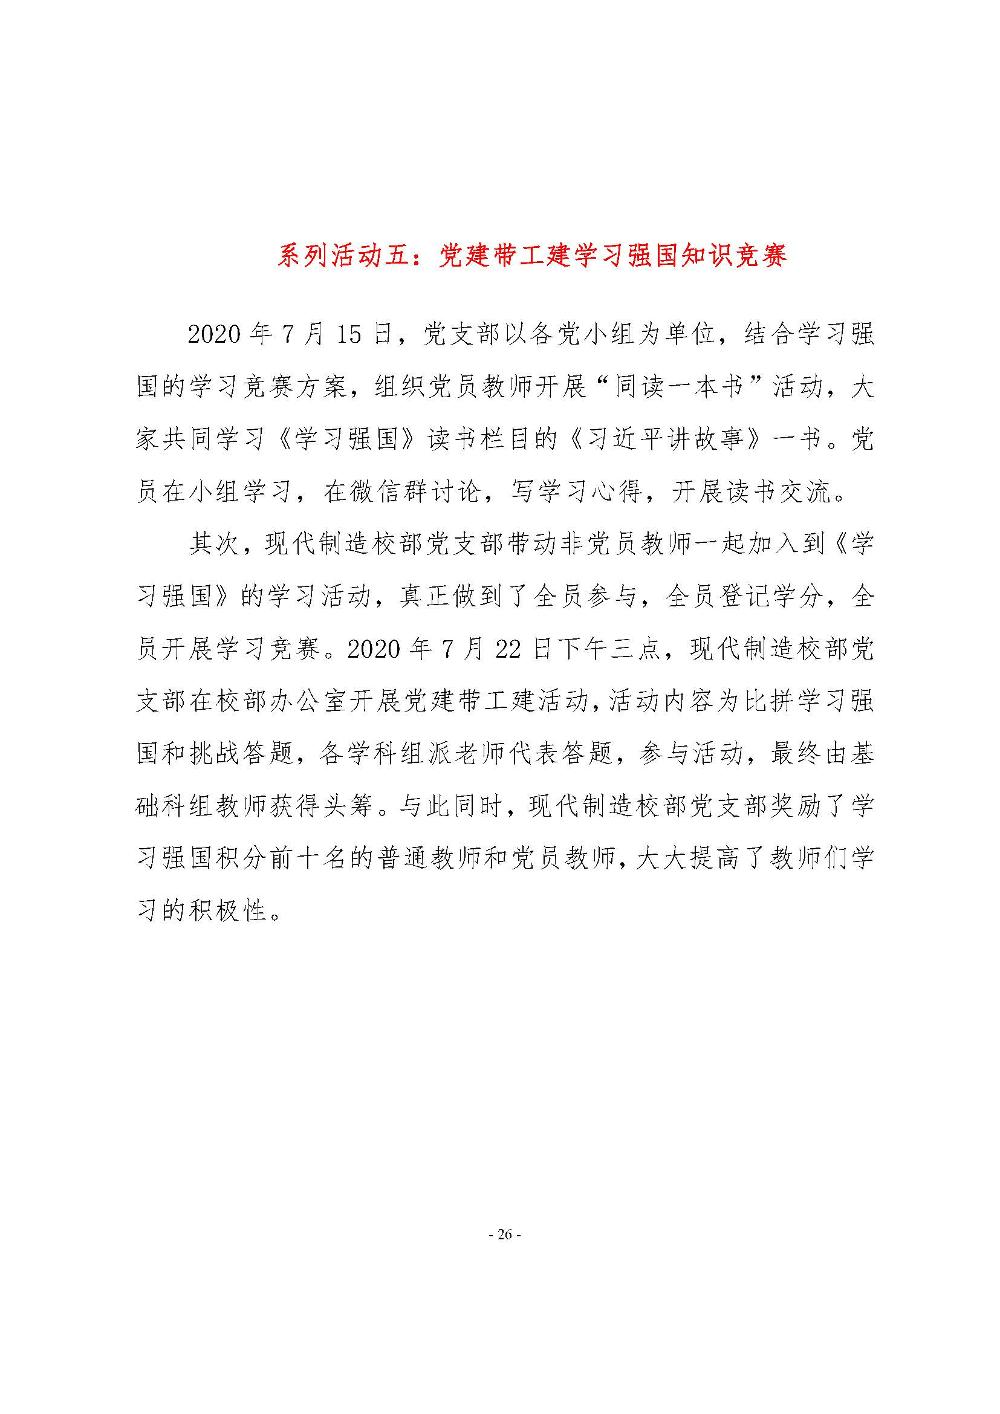 机电学校党建工作简报(2020.07）_页面_26.jpg